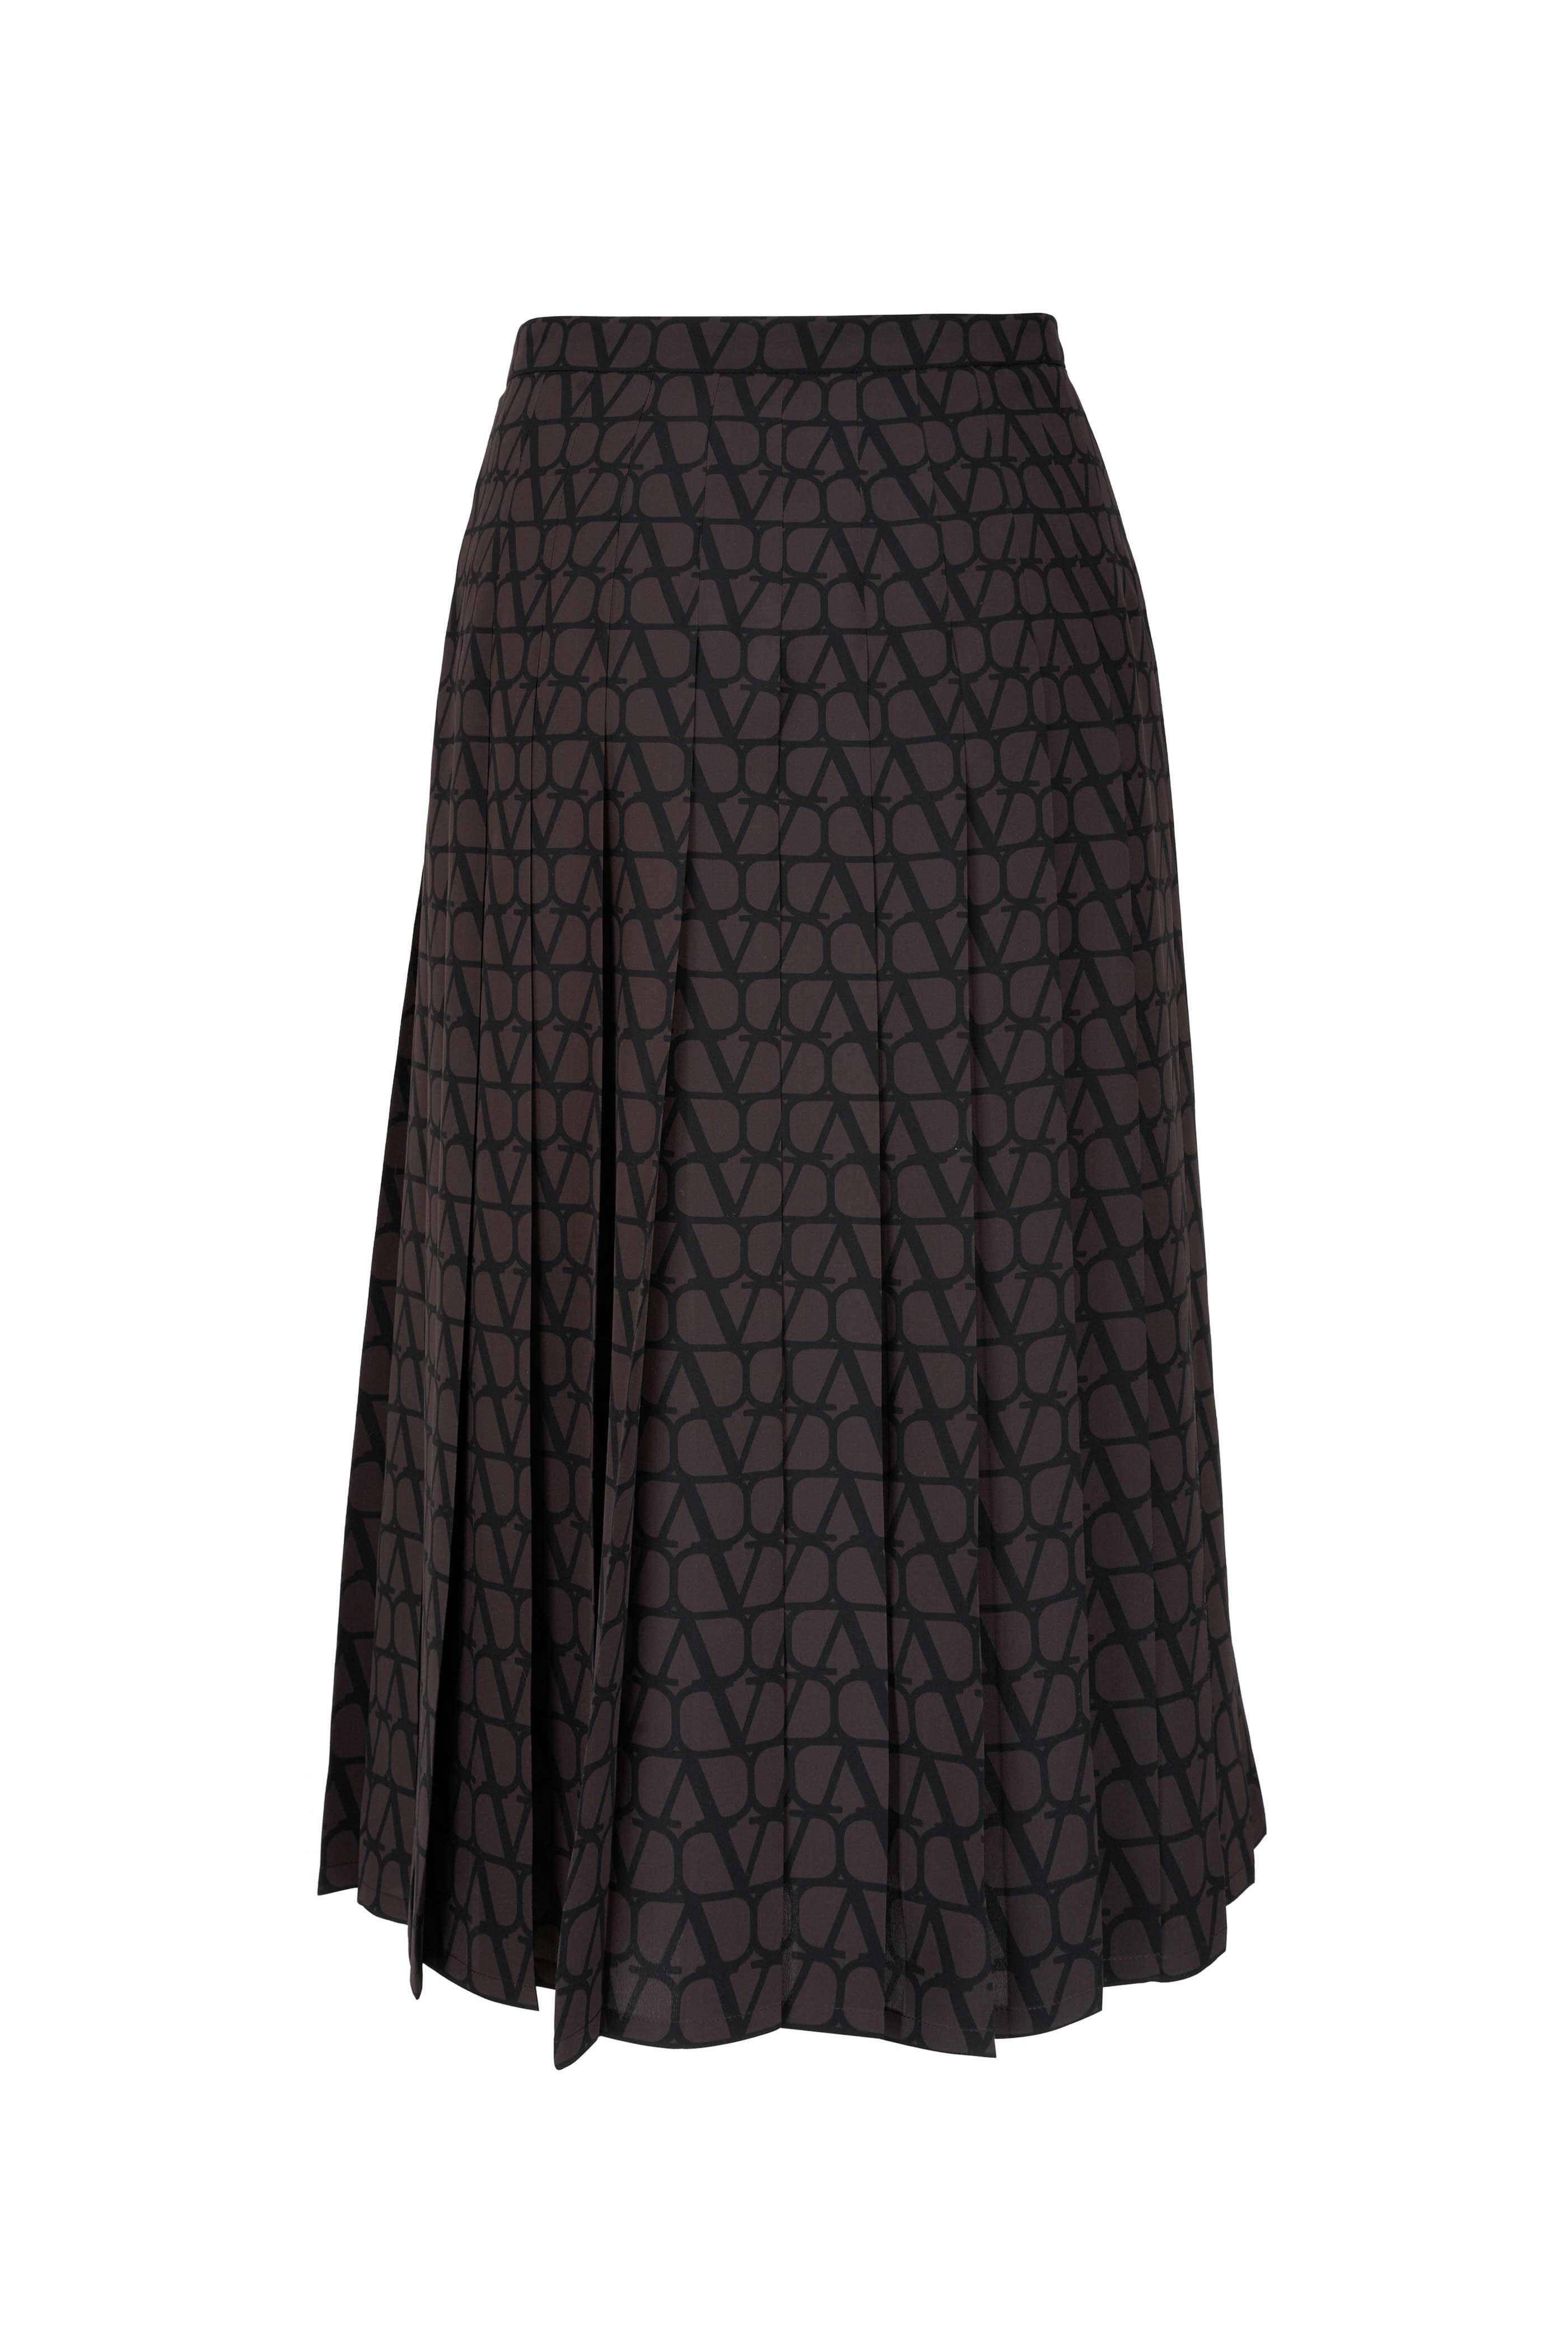 Valentino - Brown & Black VLogo Silk Skirt | Mitchell Stores